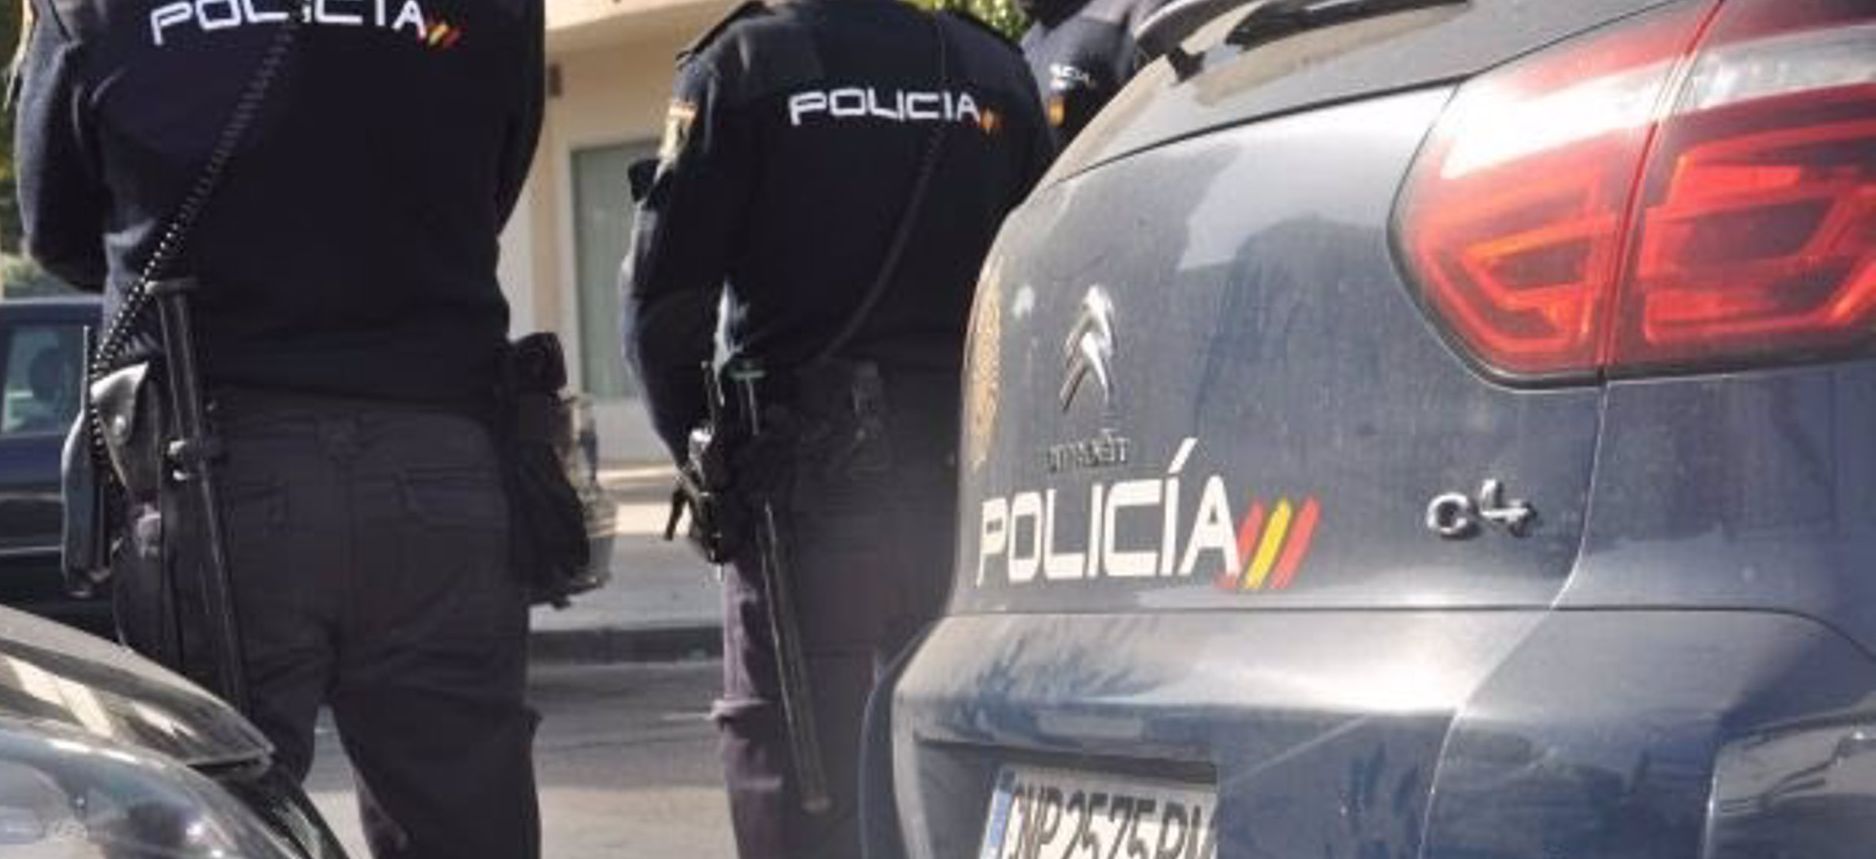 Libertad para los dos encarcelados por la supuesta violación grupal frustrada en Málaga